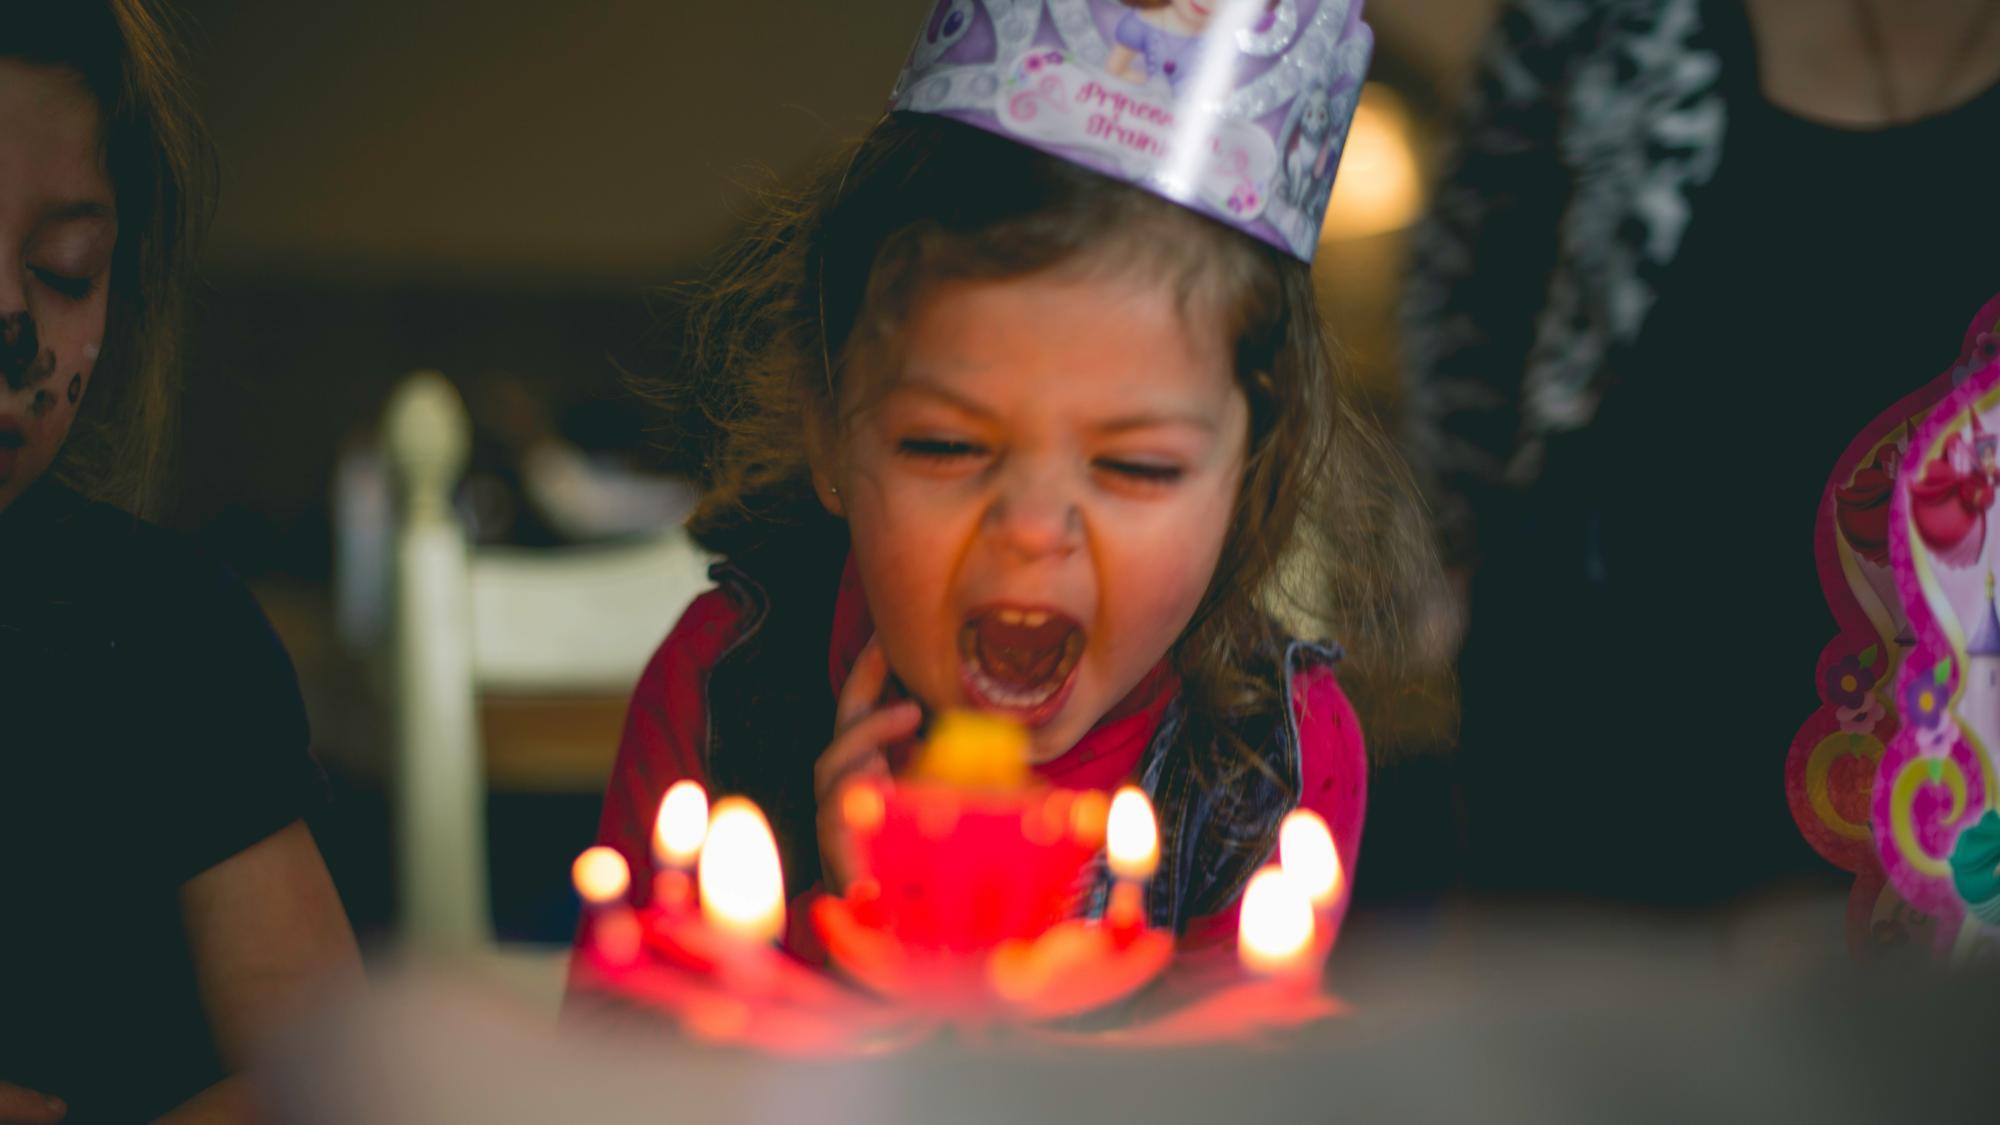 Zum Geburtstag viel Druck: Die Kinderfeier als Herausforderung